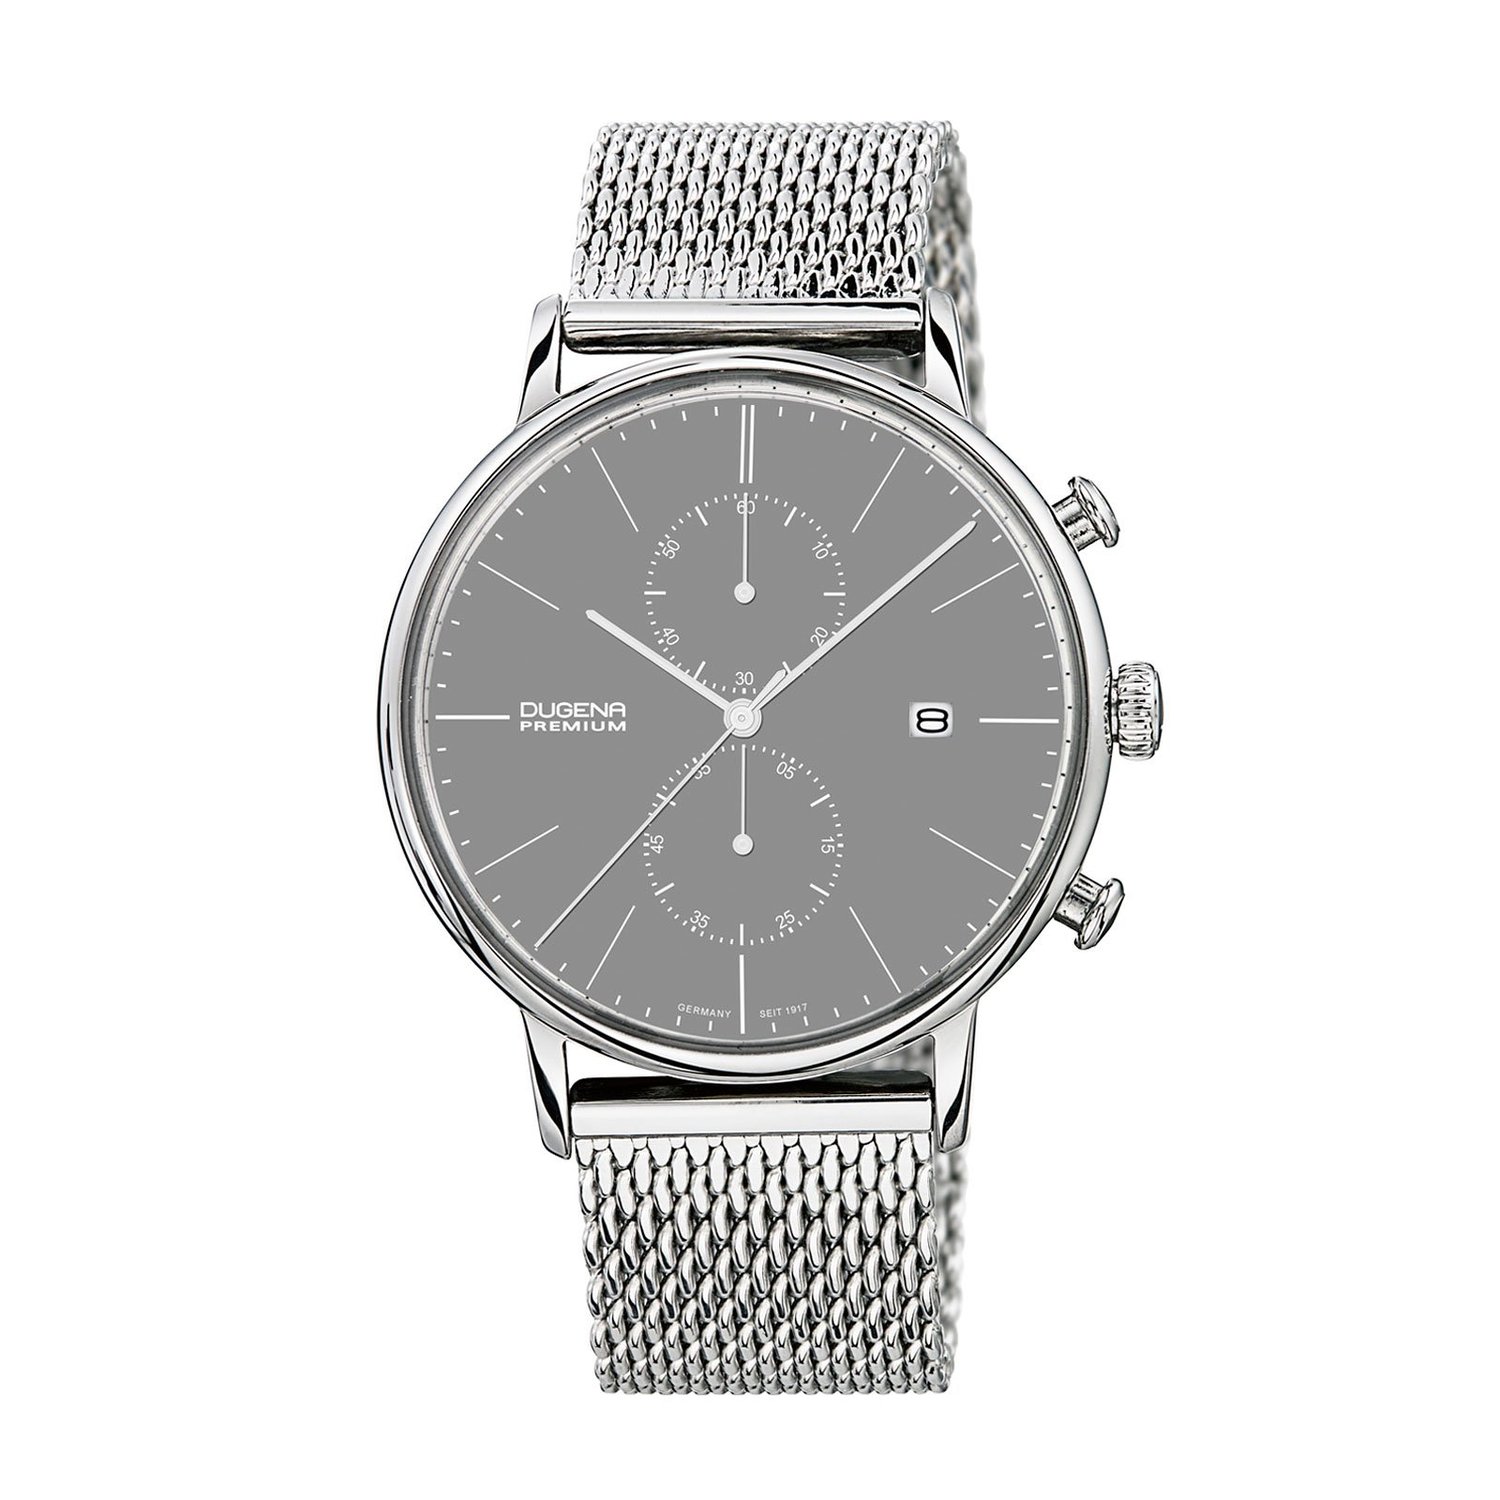 Dugena horloge Premium in up close